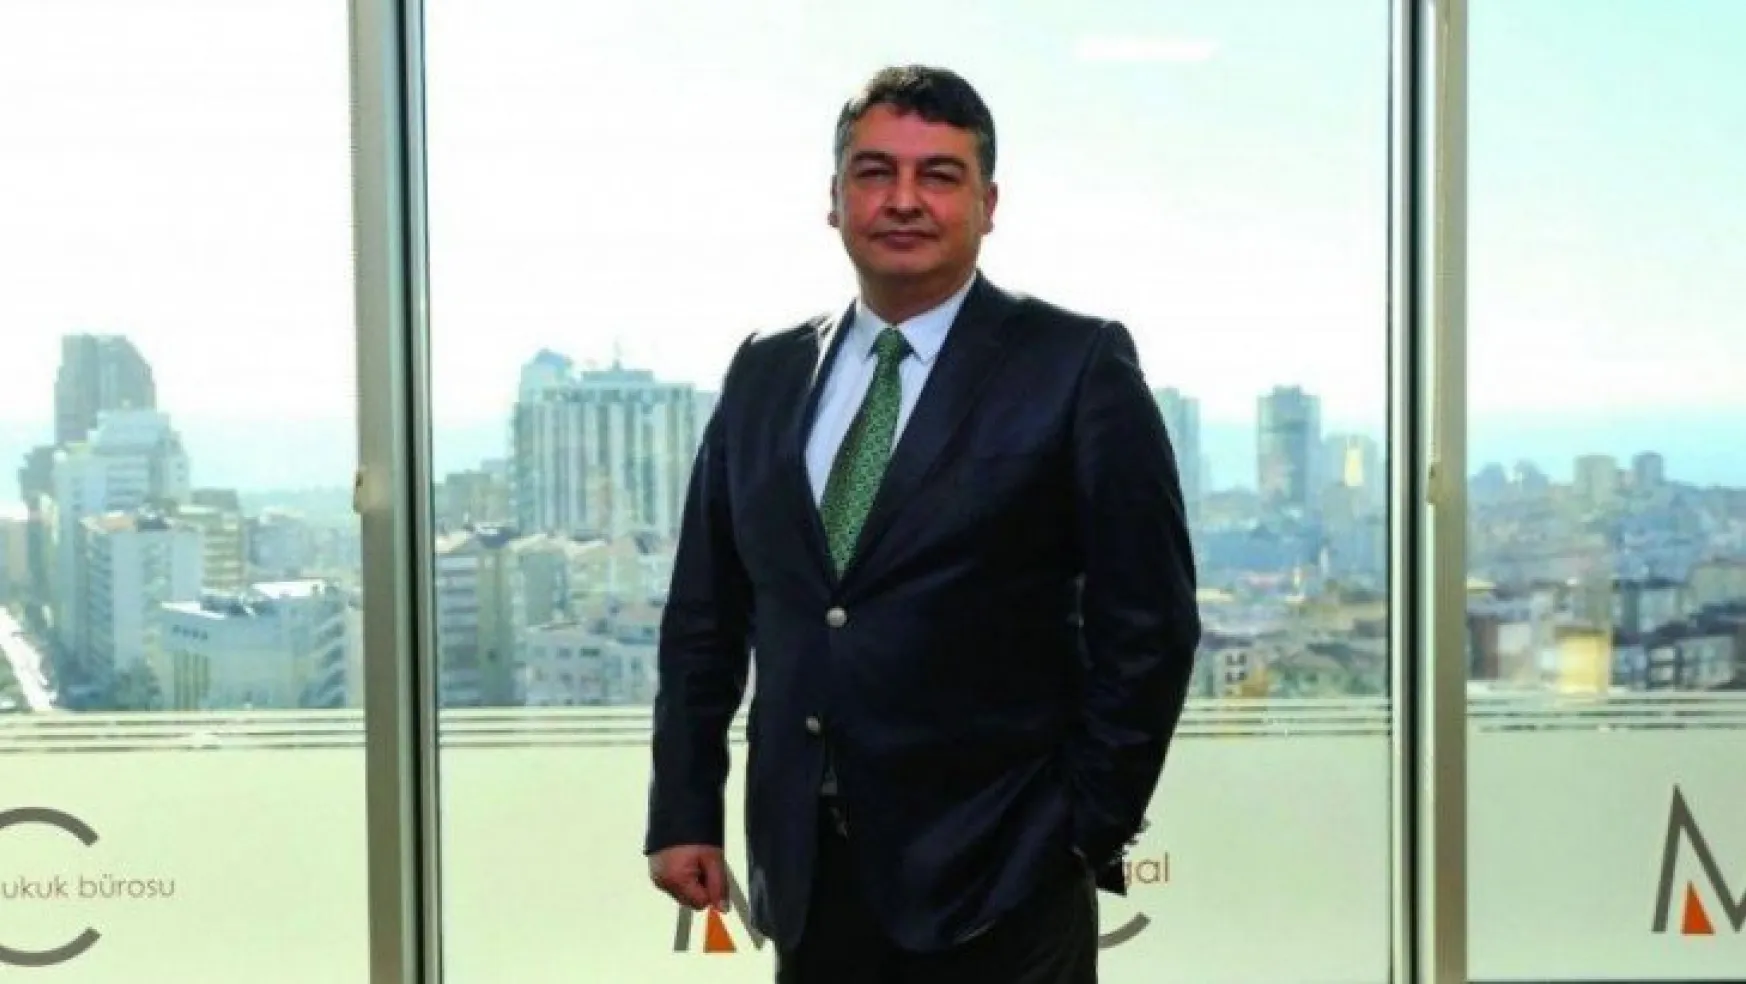 Uluslararası hukuk devi Andersen Global Türkiye'de MGC iş birliğinde büyüyecek